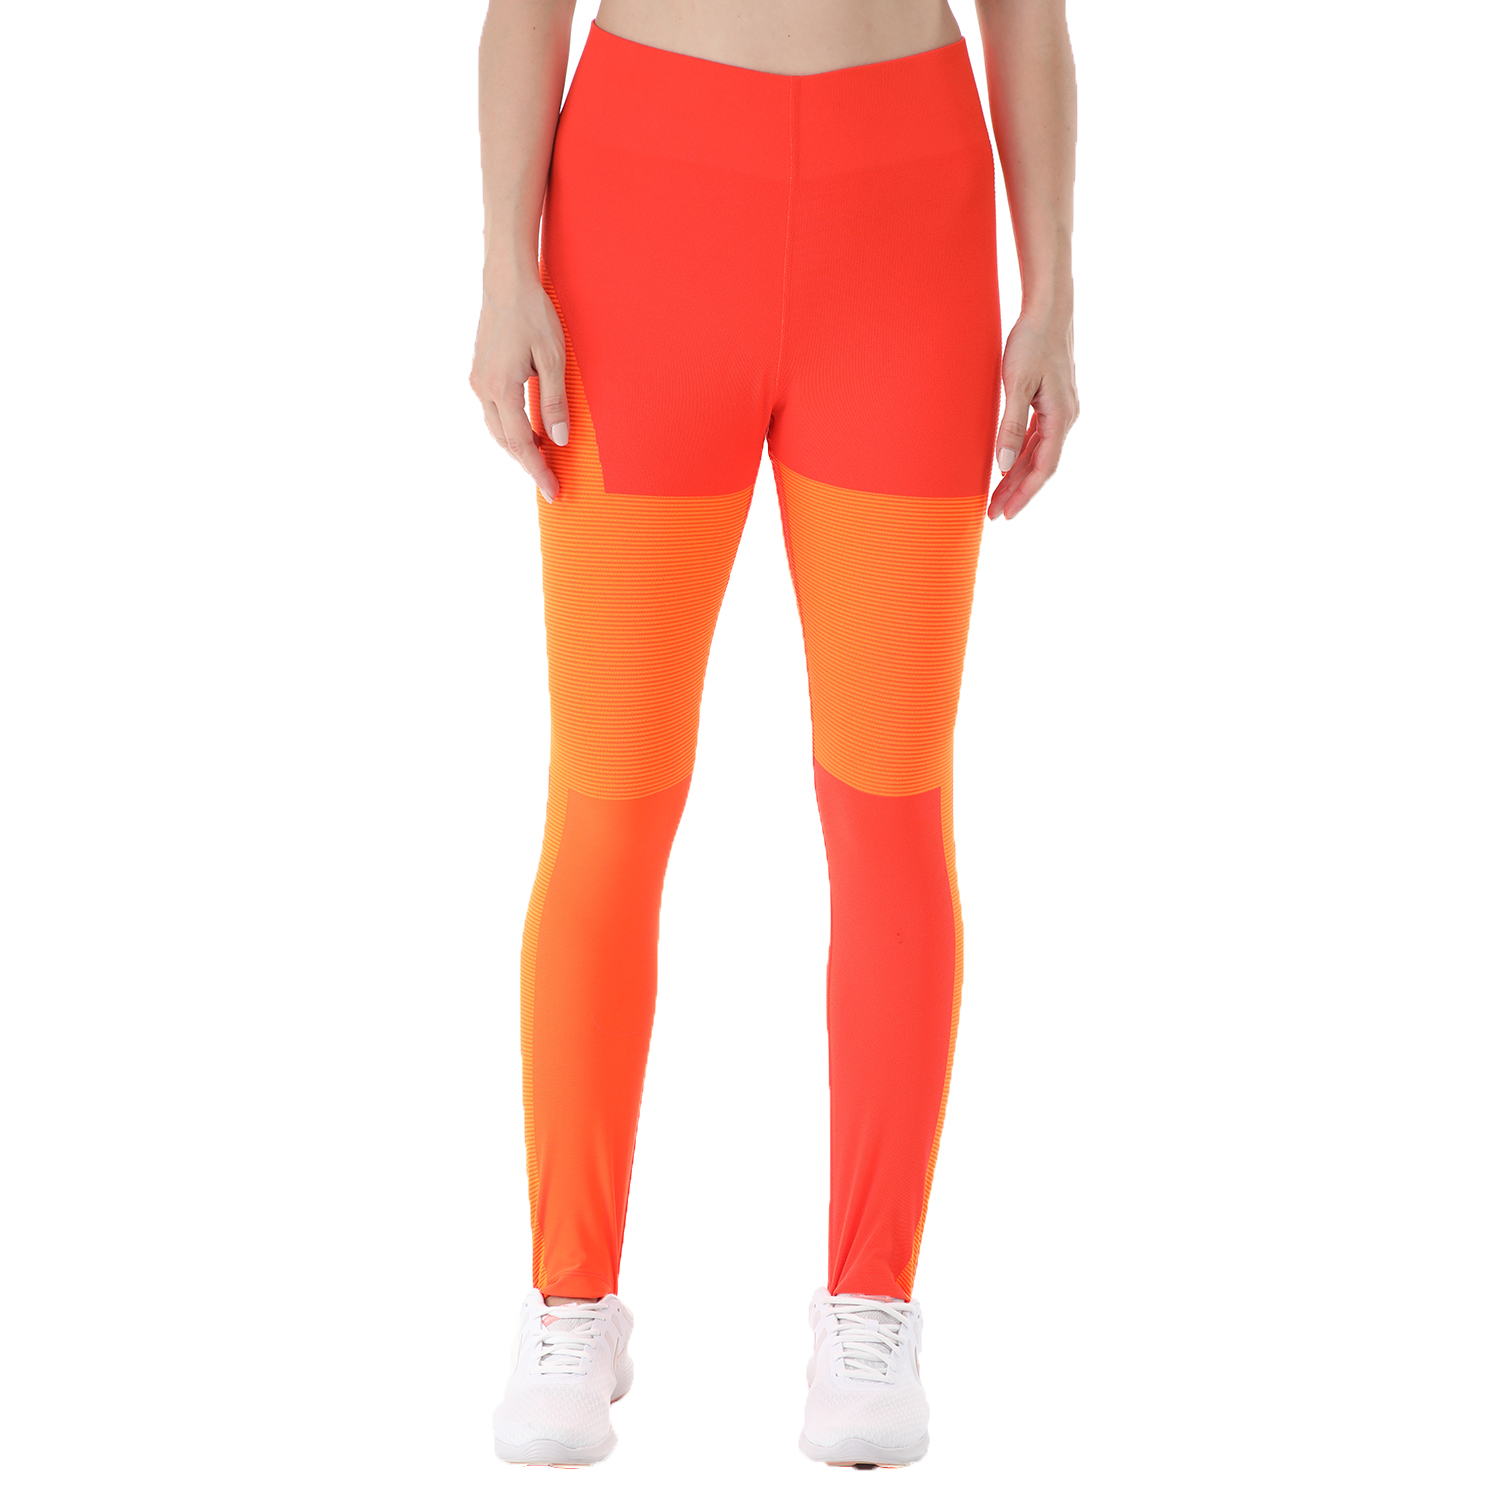 Γυναικεία/Ρούχα/Αθλητικά/Κολάν NIKE - Γυναικείο κολάν NIKE Tech Pack 3/4 πορτοκαλί